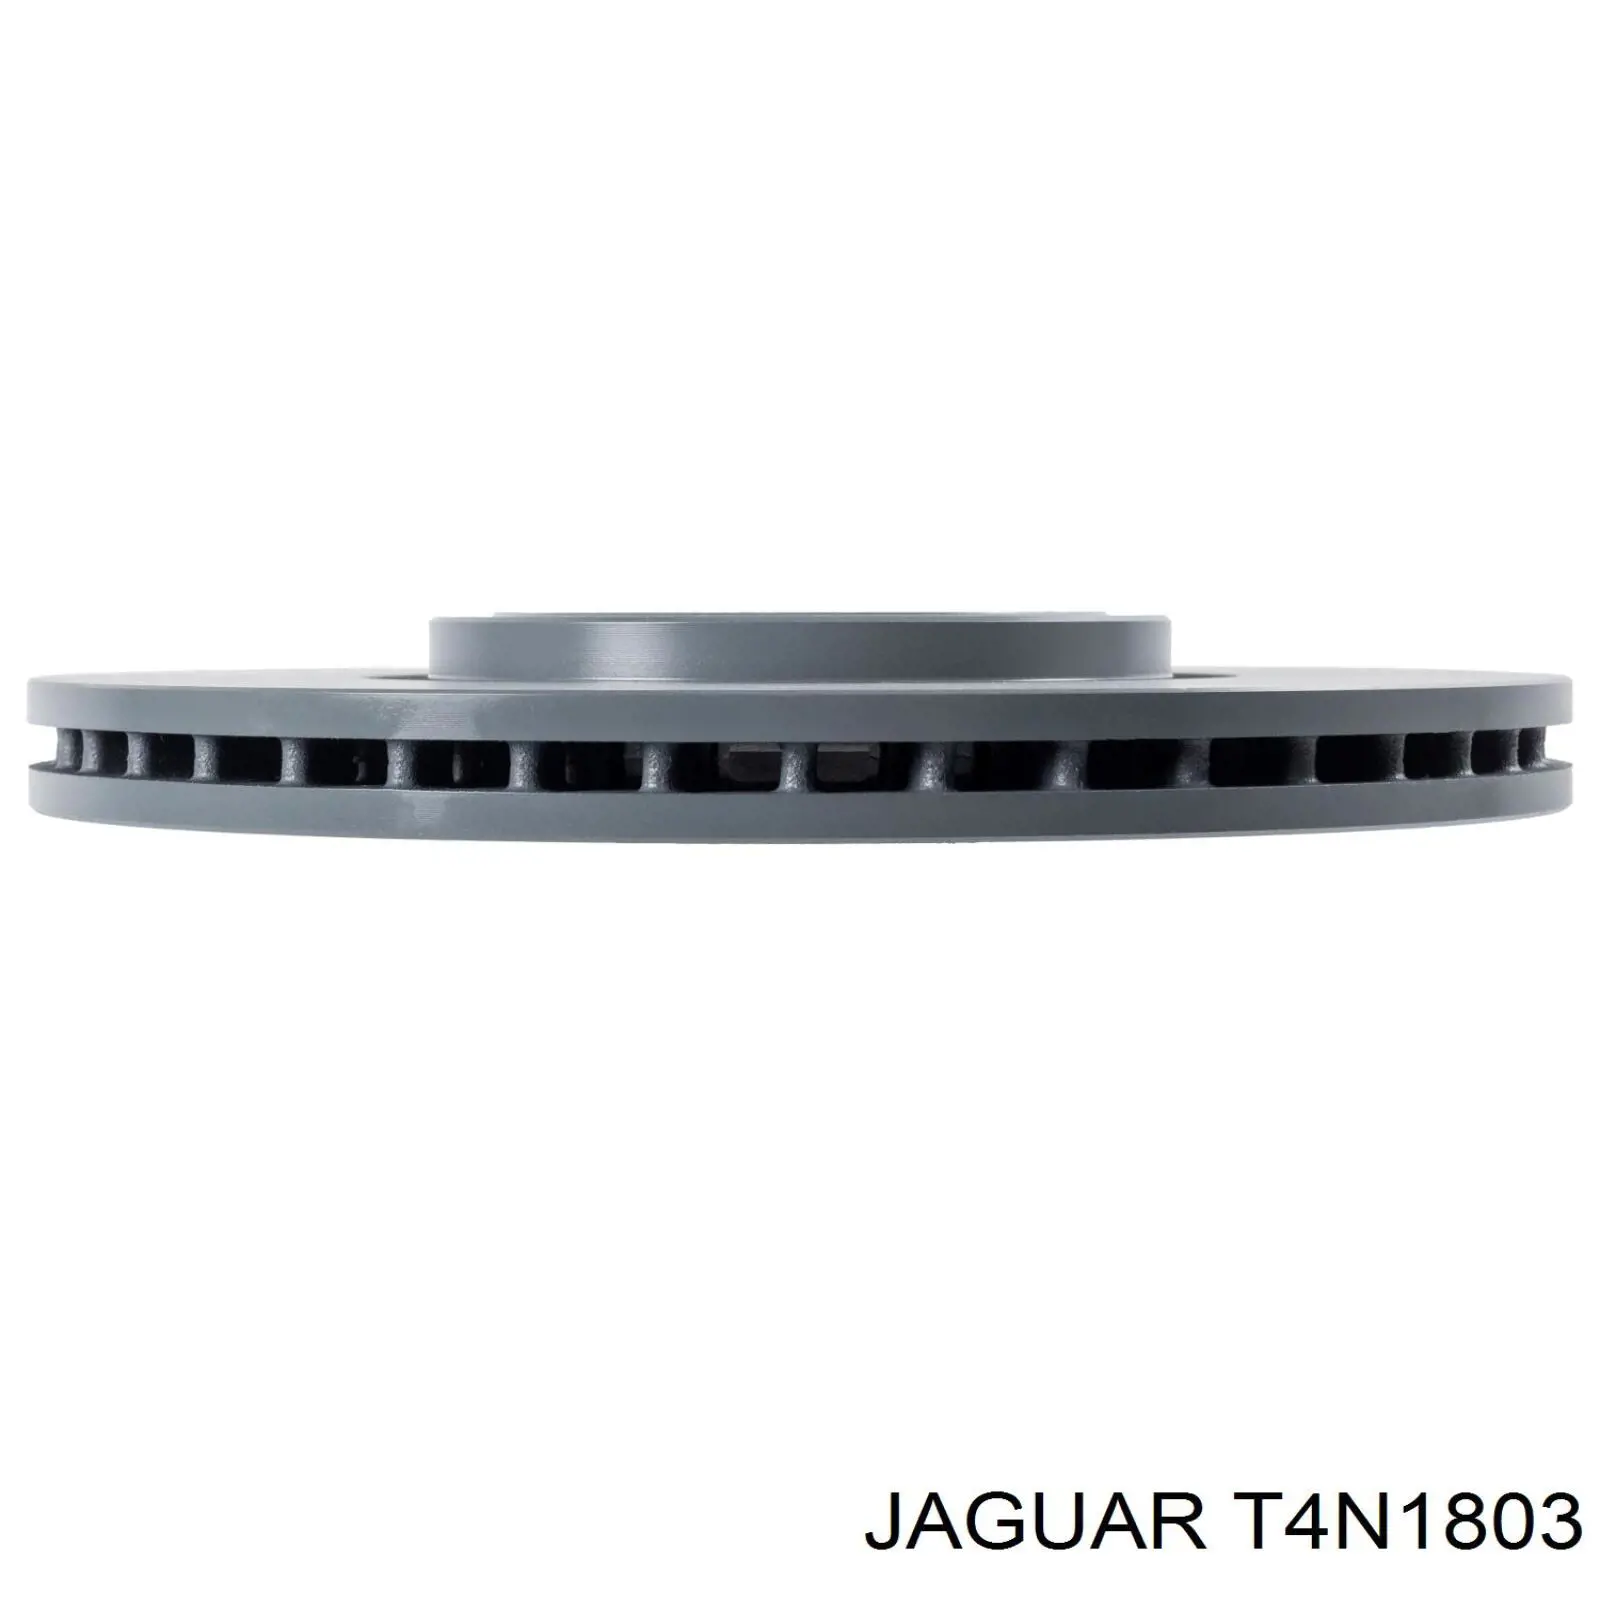 T4N1803 Jaguar disco do freio dianteiro